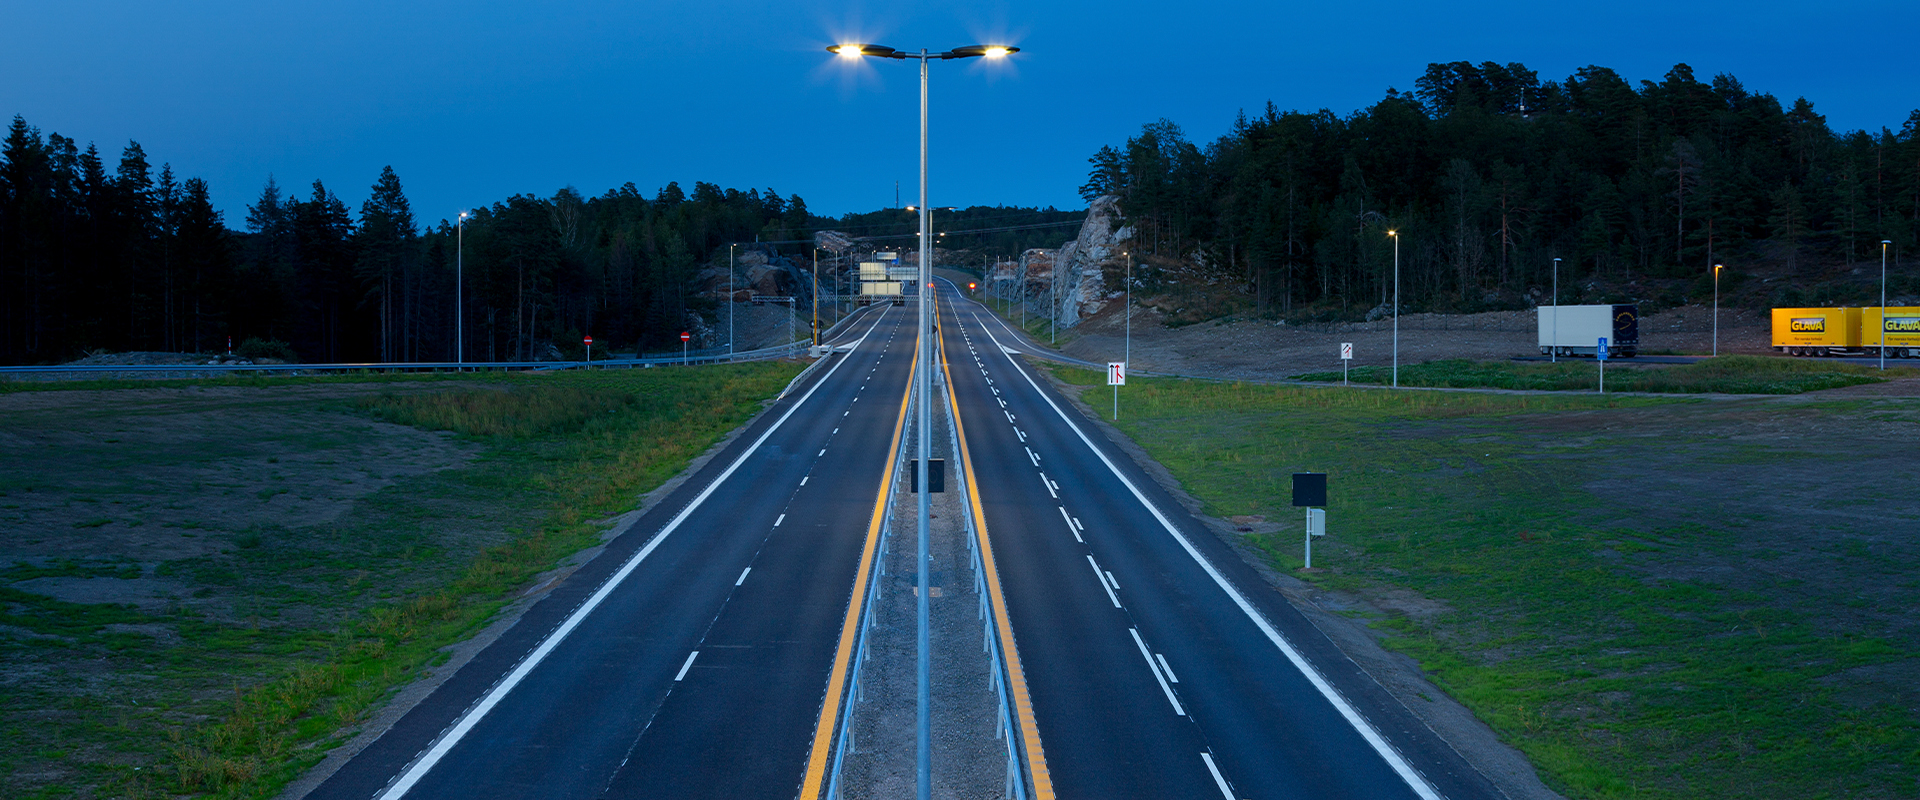 Éclairage routier et urbain à haute économie d'énergie - AEC Illuminazione